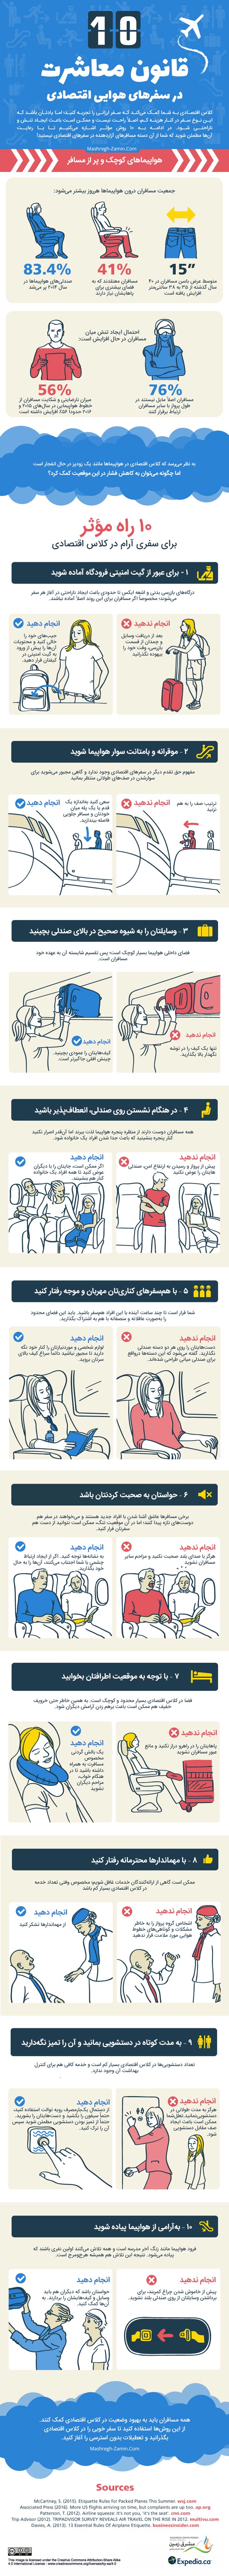 اینفوگرافیک قوانین معاشرت در هواپیمای اکونومی